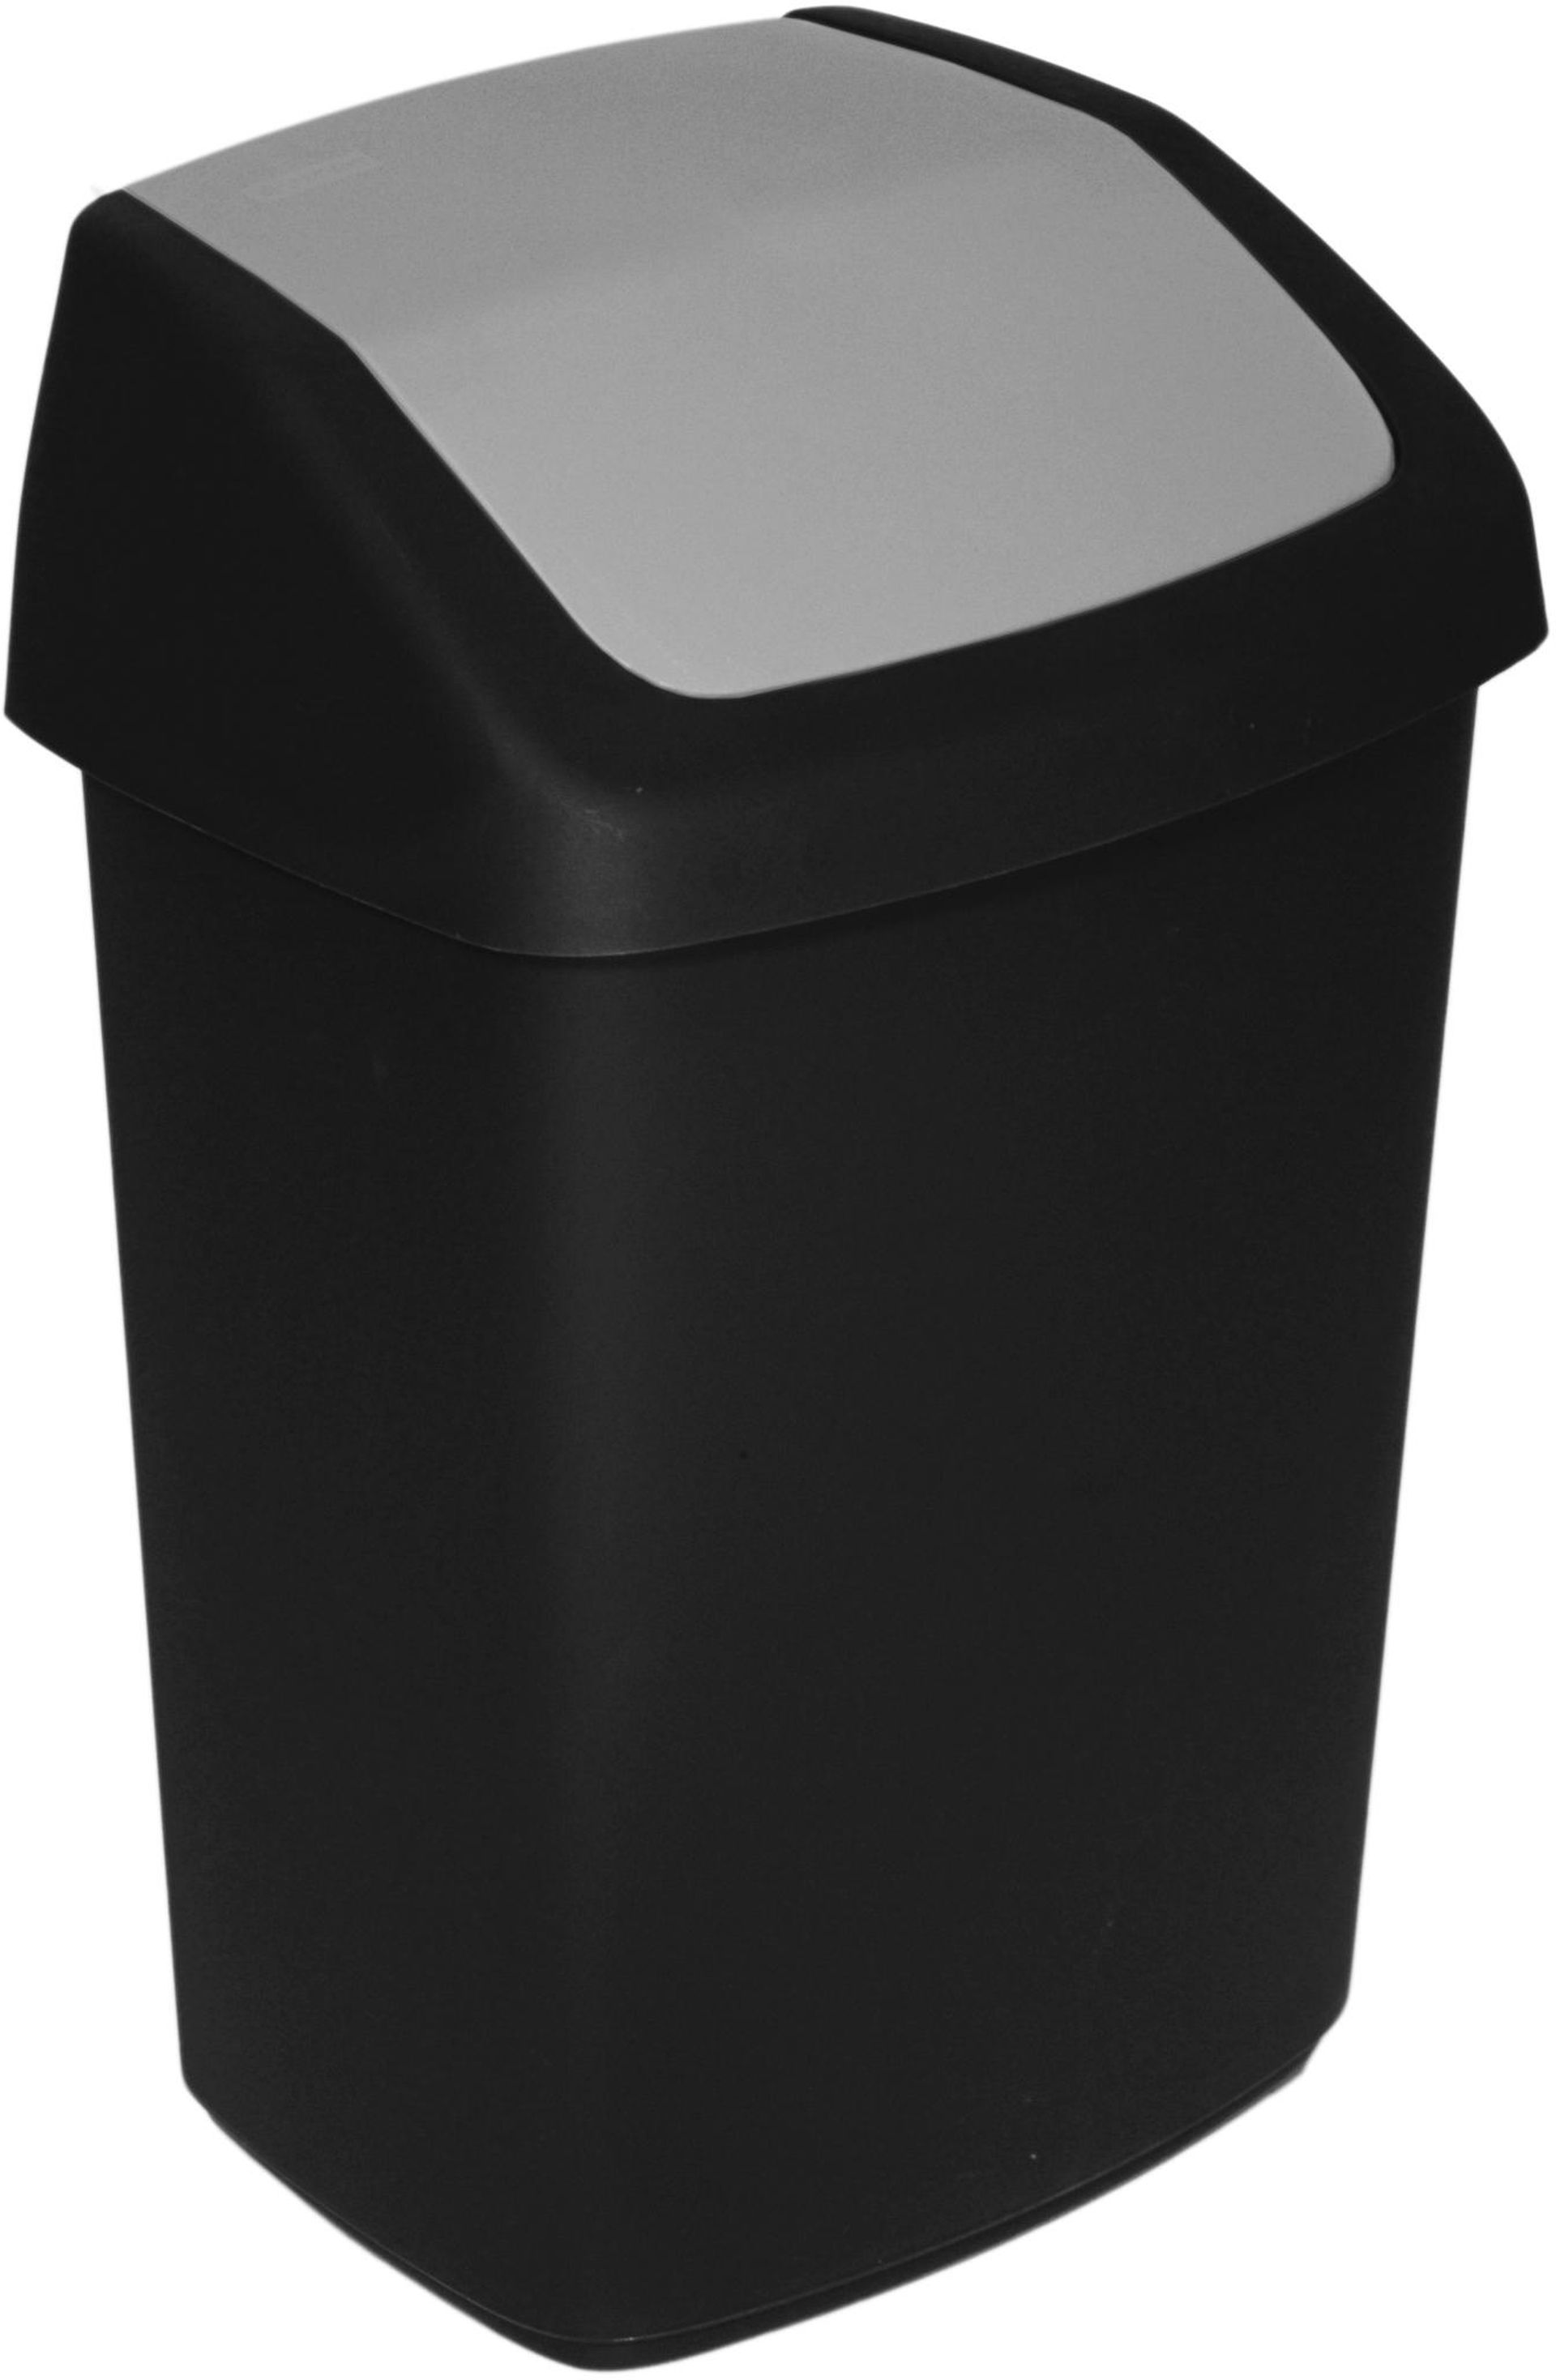 CURVER SWING BIN 10L Odpadkový koš 24,6 x 19,8 x 37,3 cm černý 03984-Y09